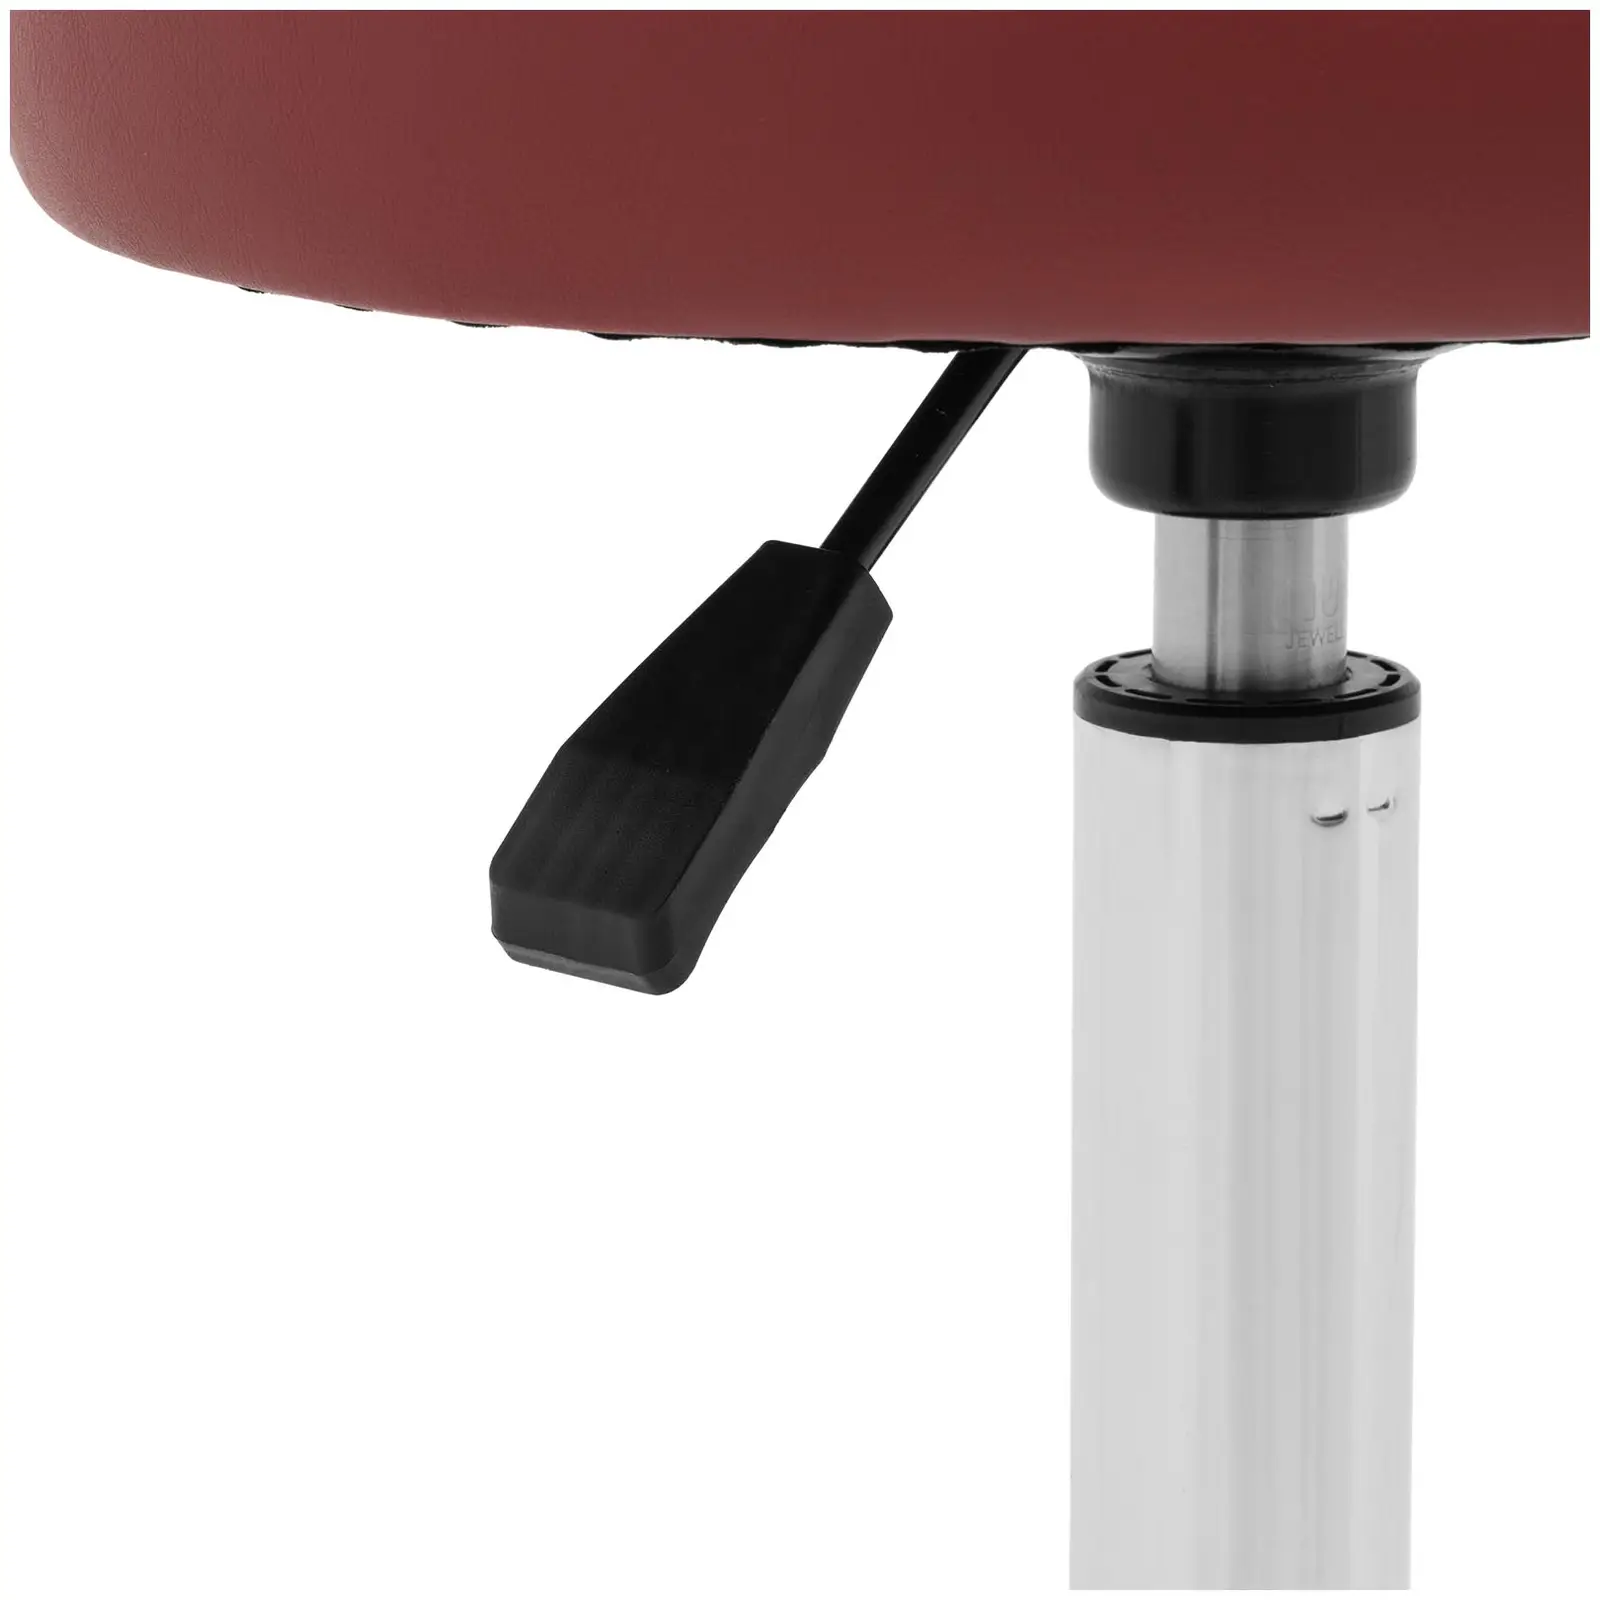 Arbetsstol med ryggstöd - 46 - 60 cm - 150 kg - Vinröd